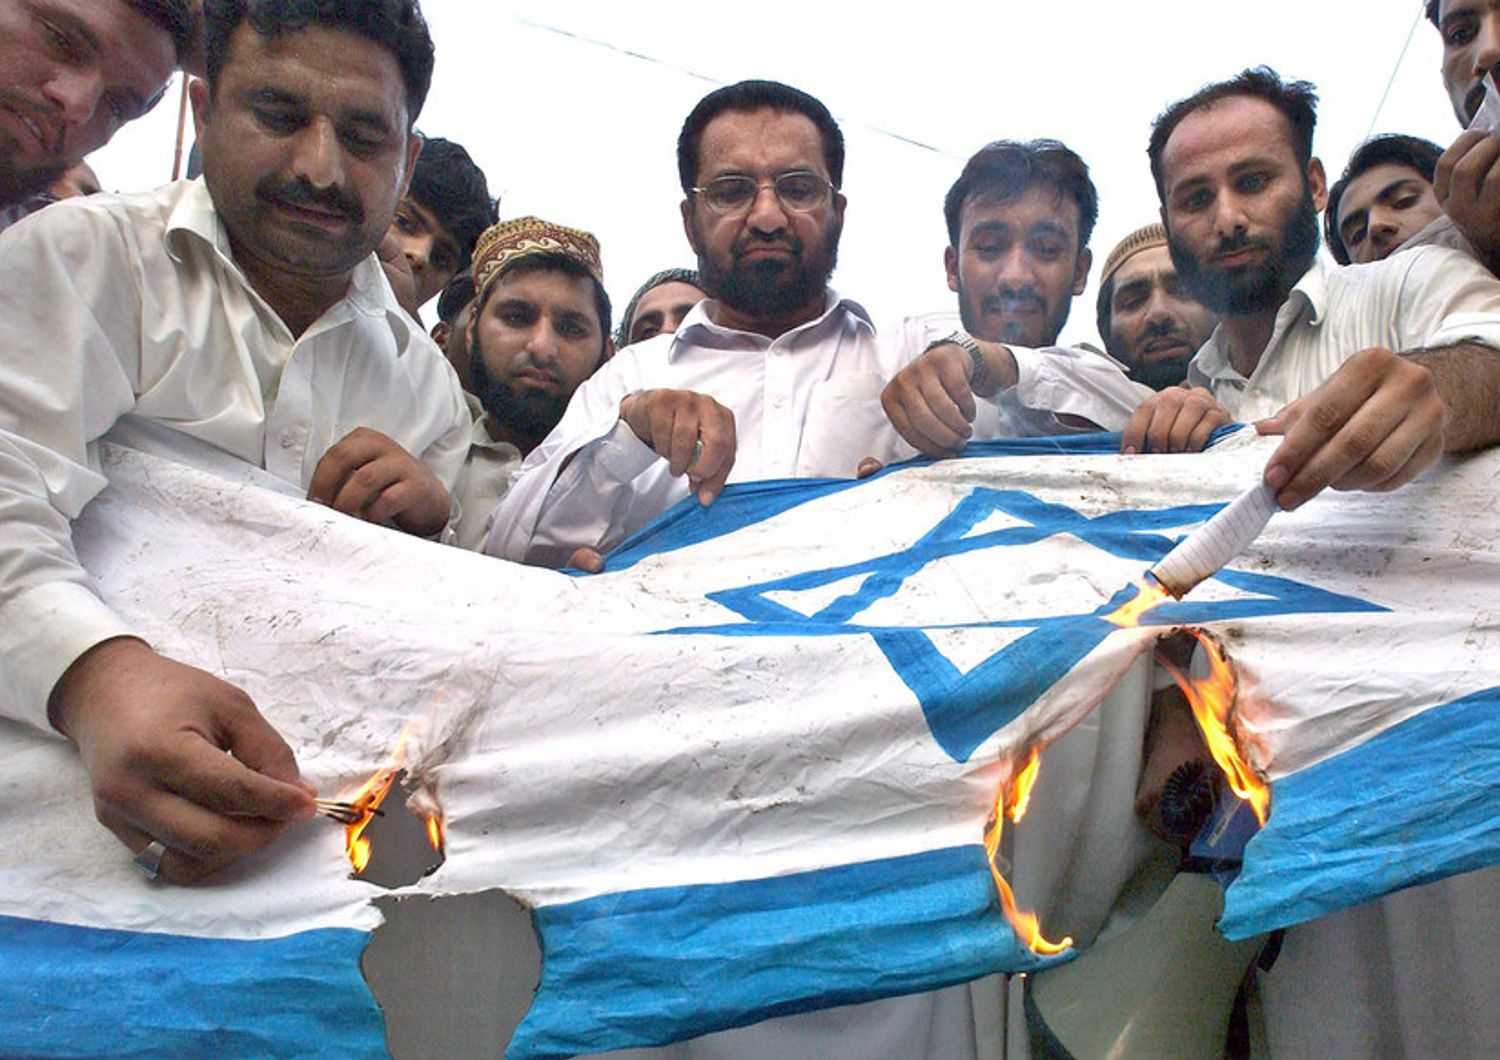 &nbsp;bandiera israele bruciata antisemitismo